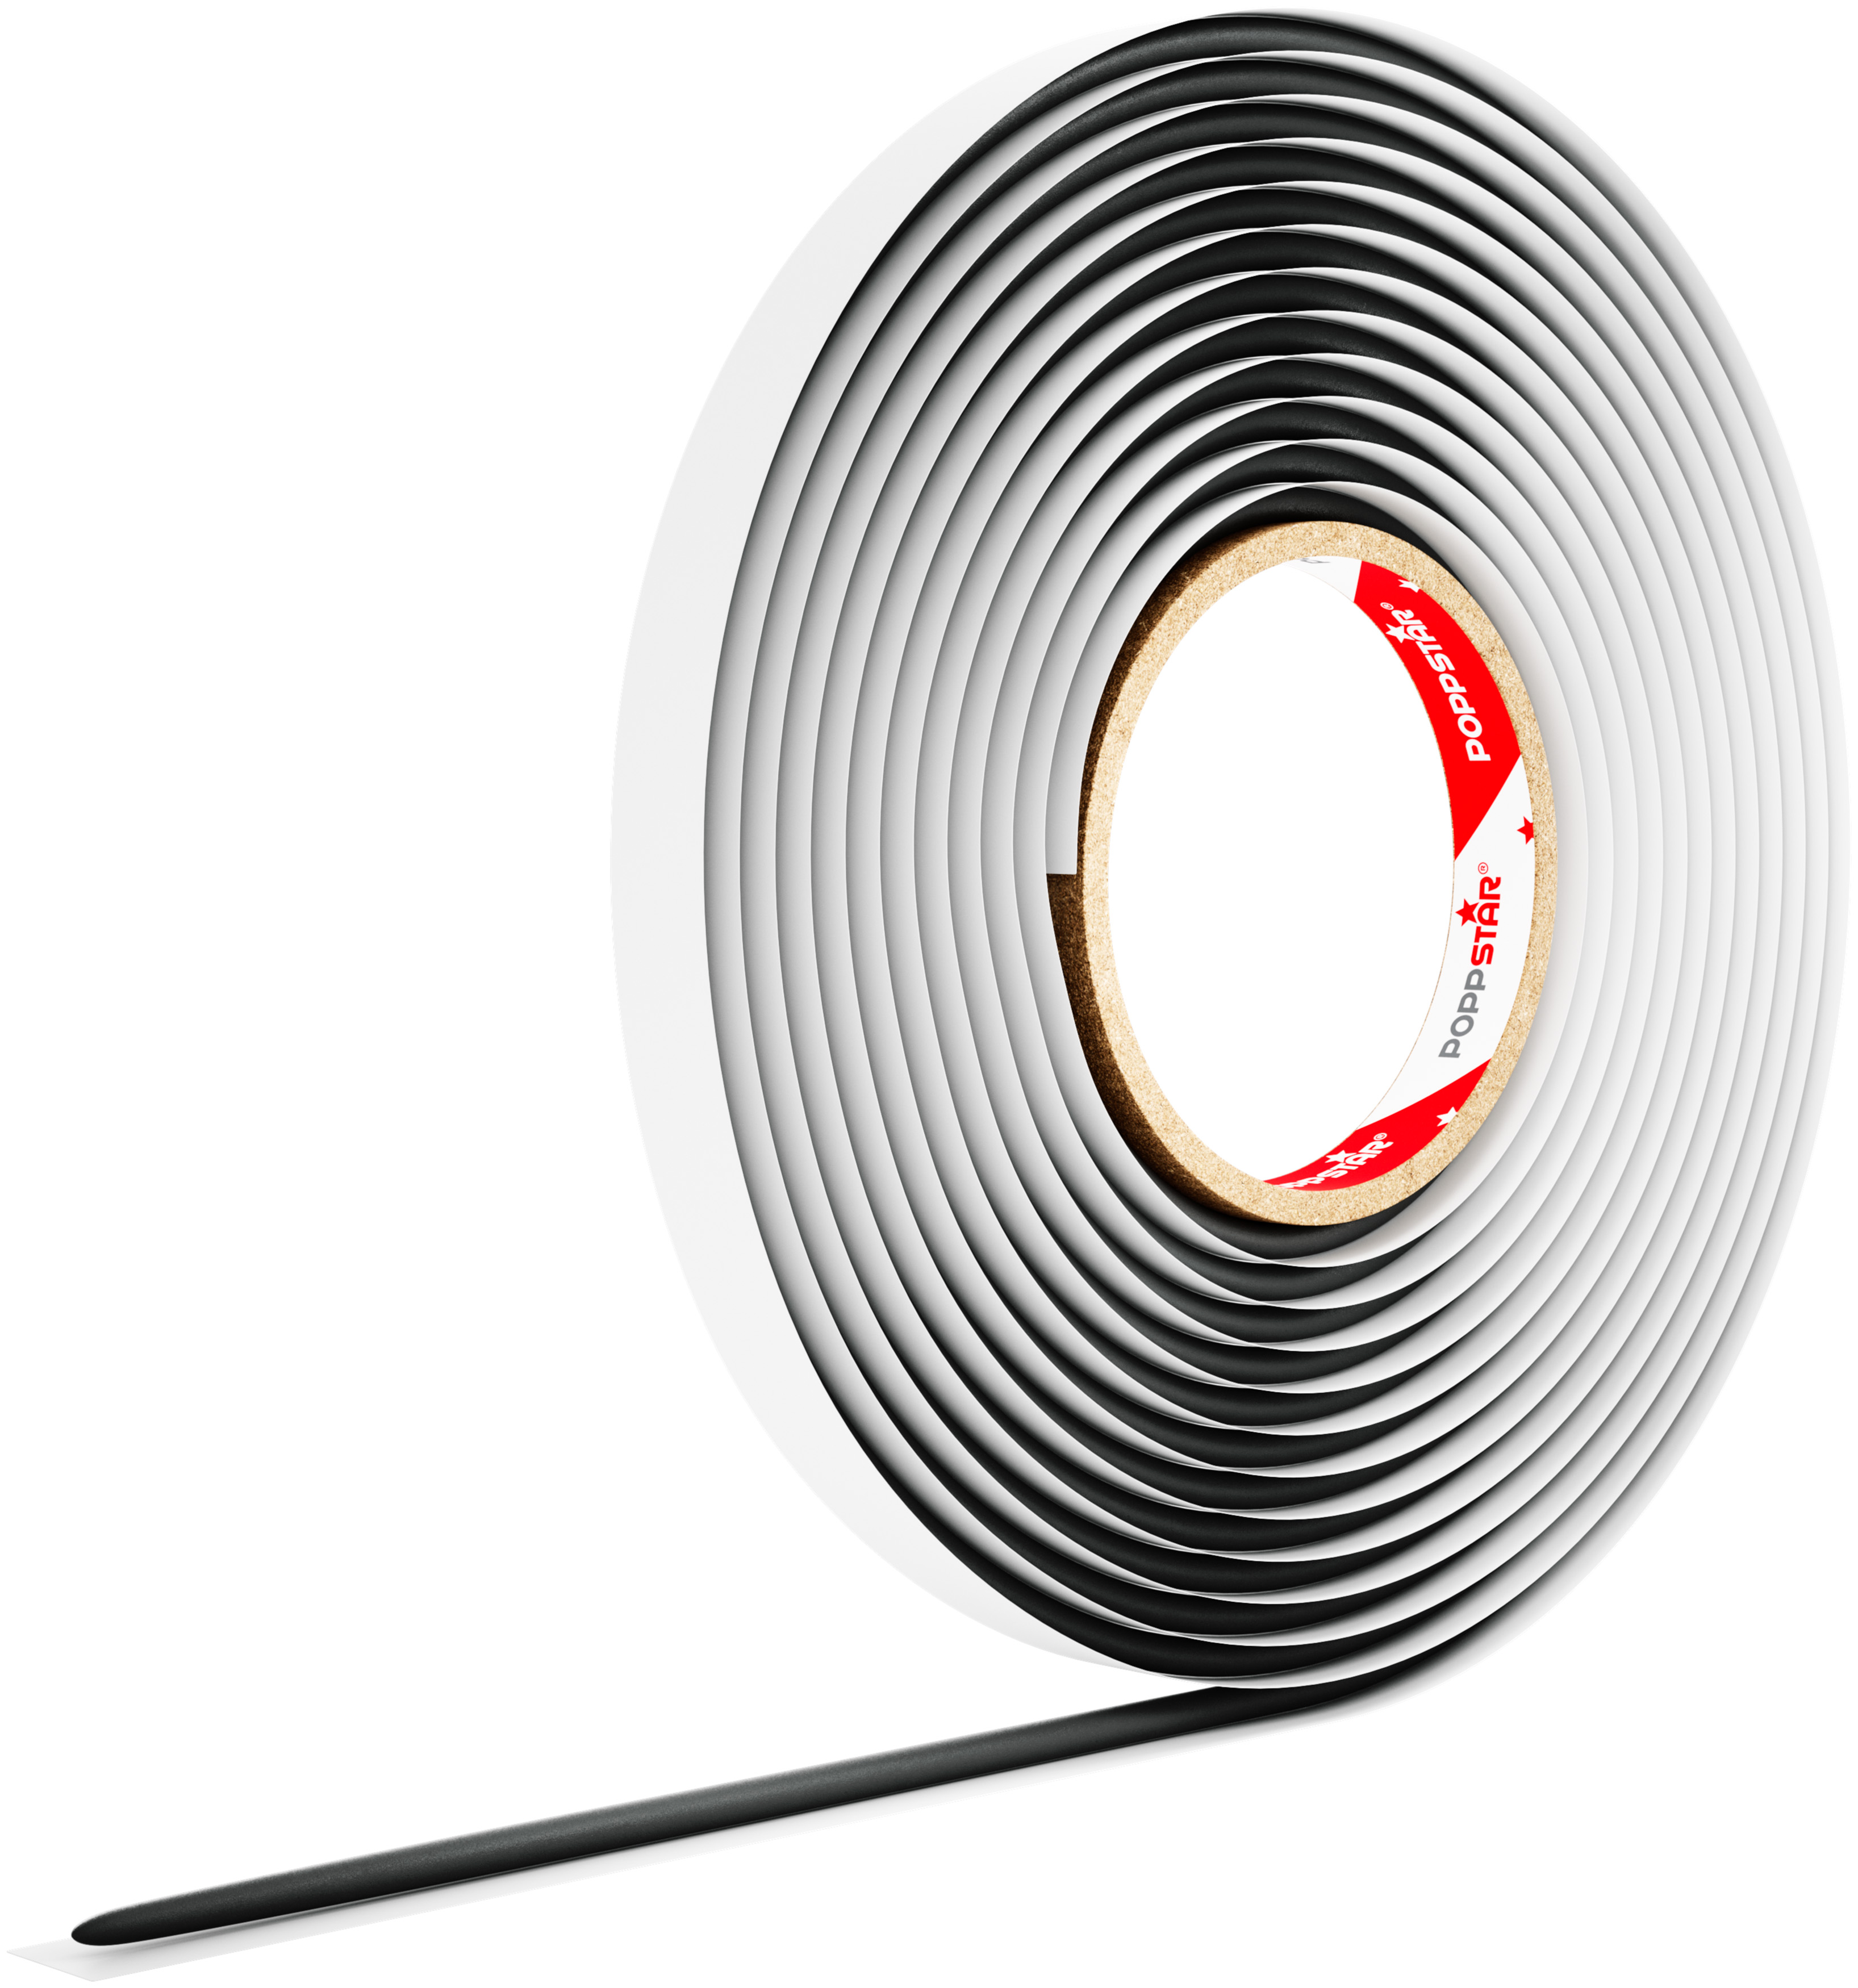 Poppstar Butylrundschnur Klebeband (5m x 6mm) Dichtband, schwarz, selbstklebend